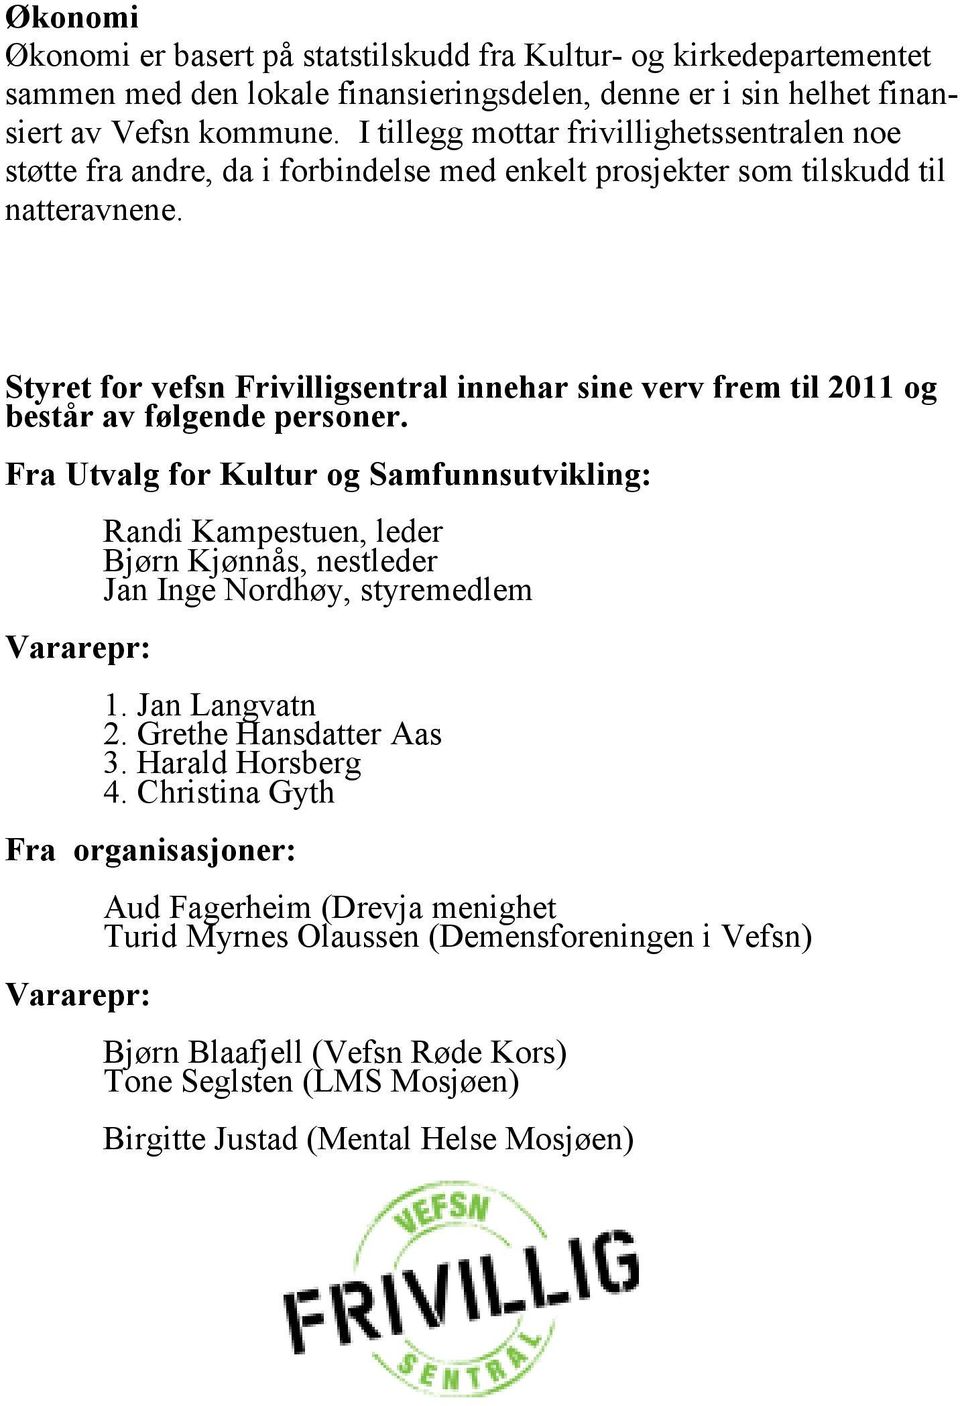 Styret for vefsn Frivilligsentral innehar sine verv frem til 2011 og består av følgende personer.